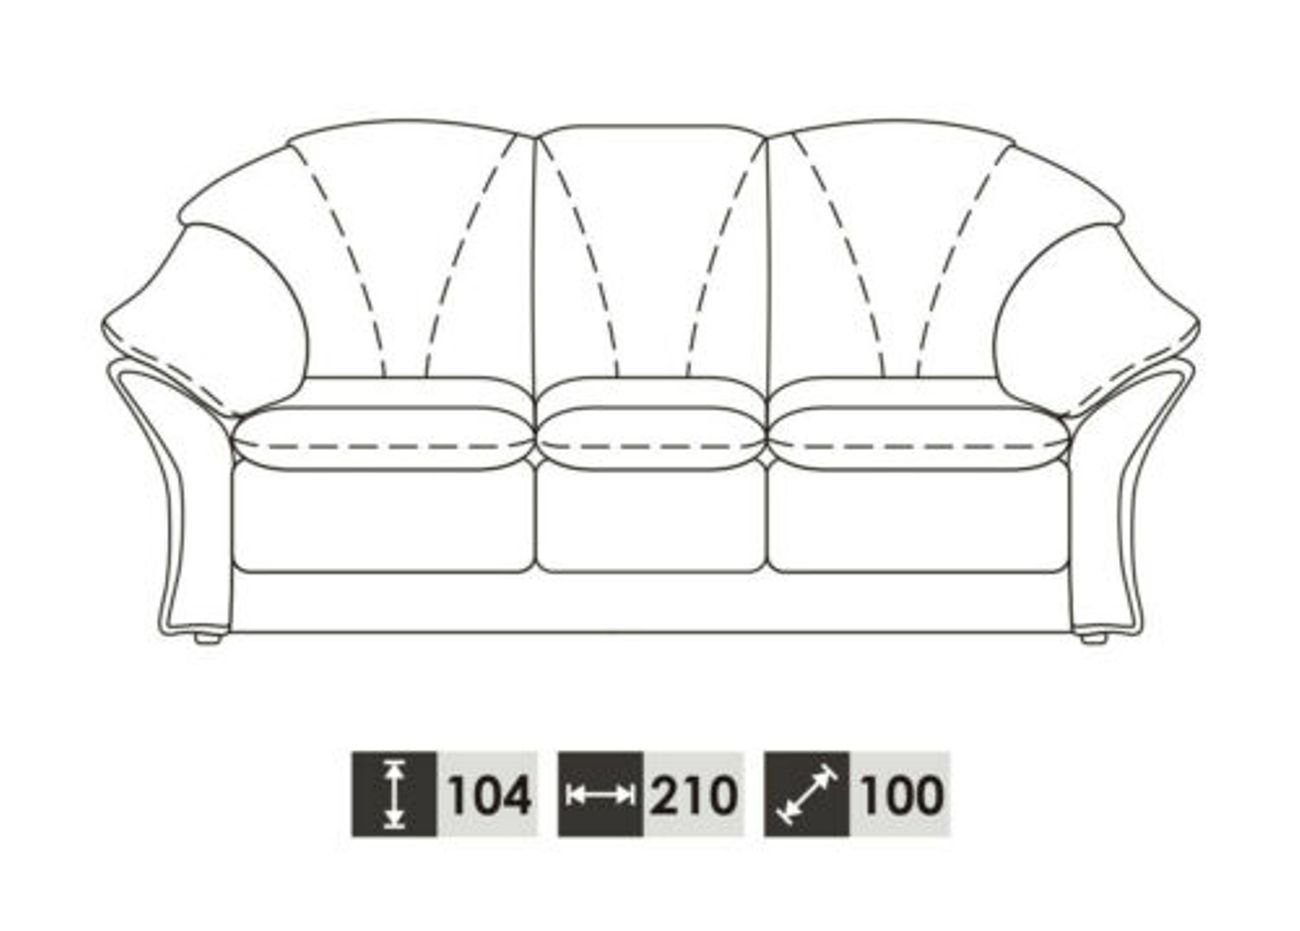 JVmoebel Sofa Europe in Wohnzimmer 3+1 Vollleder Garnitur 100% Couch, Klassische Made